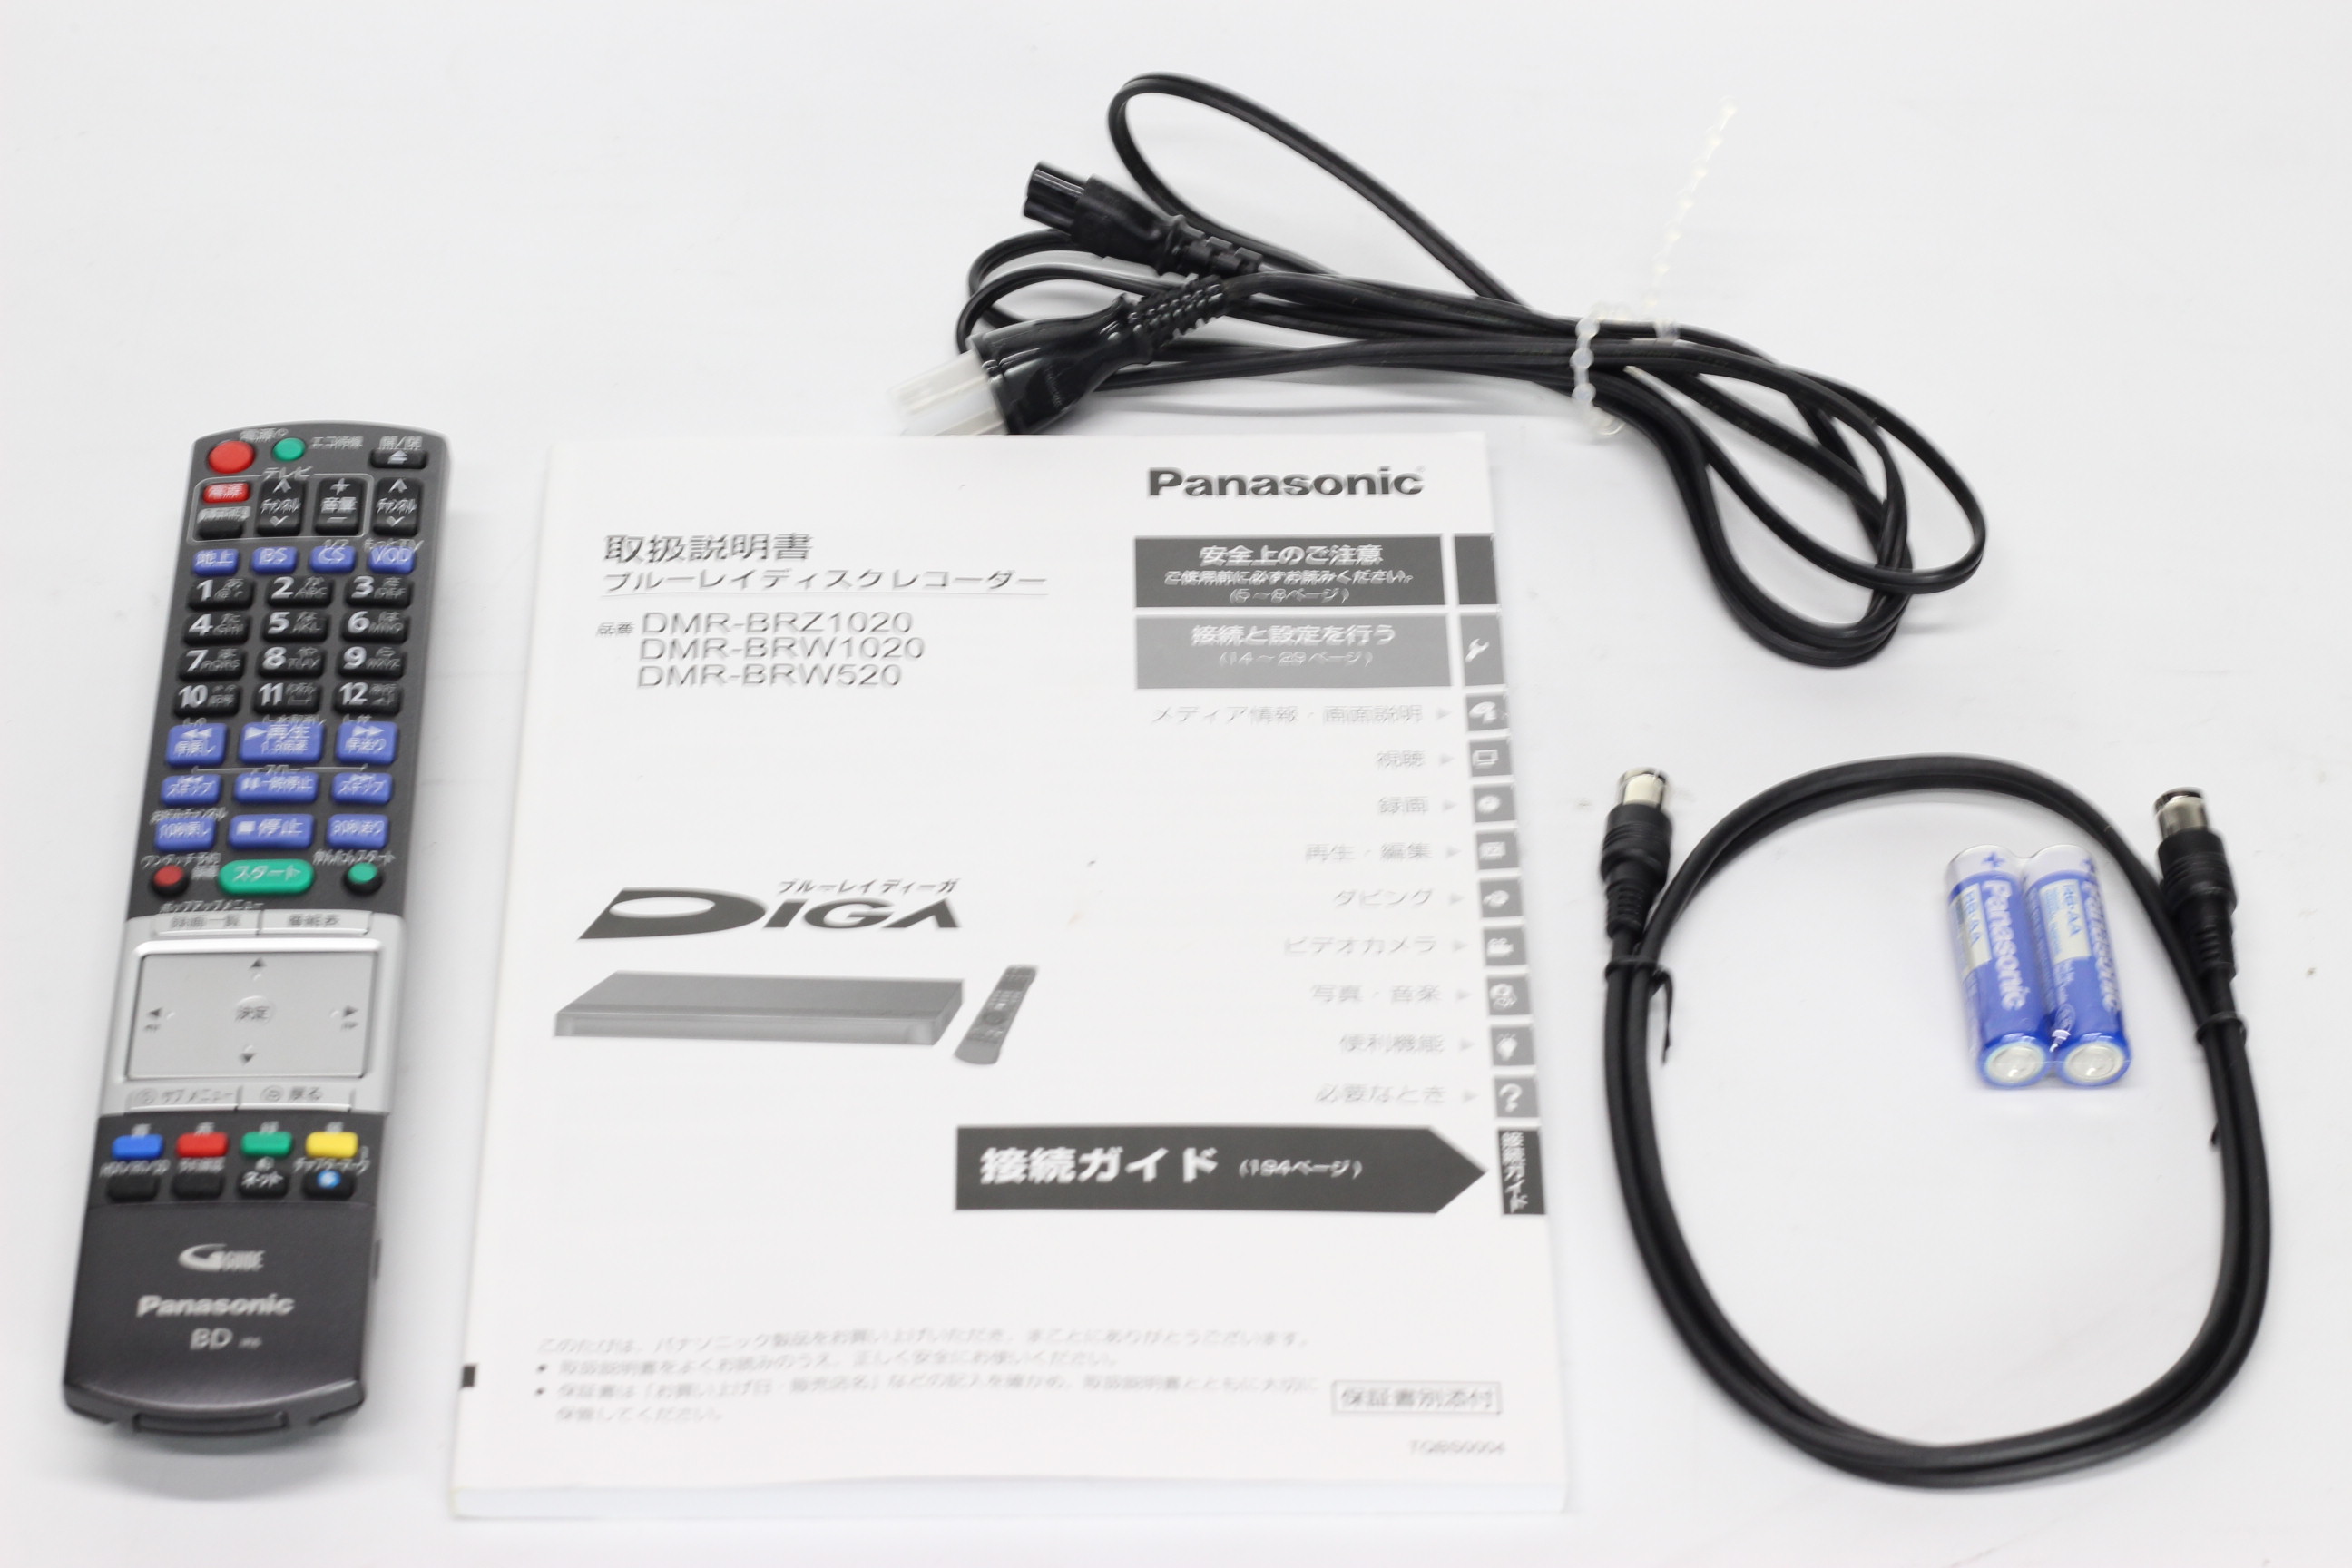 アバックWEB-SHOP / ※特価※【中古】Panasonic DMR-BRW1020【コード21 